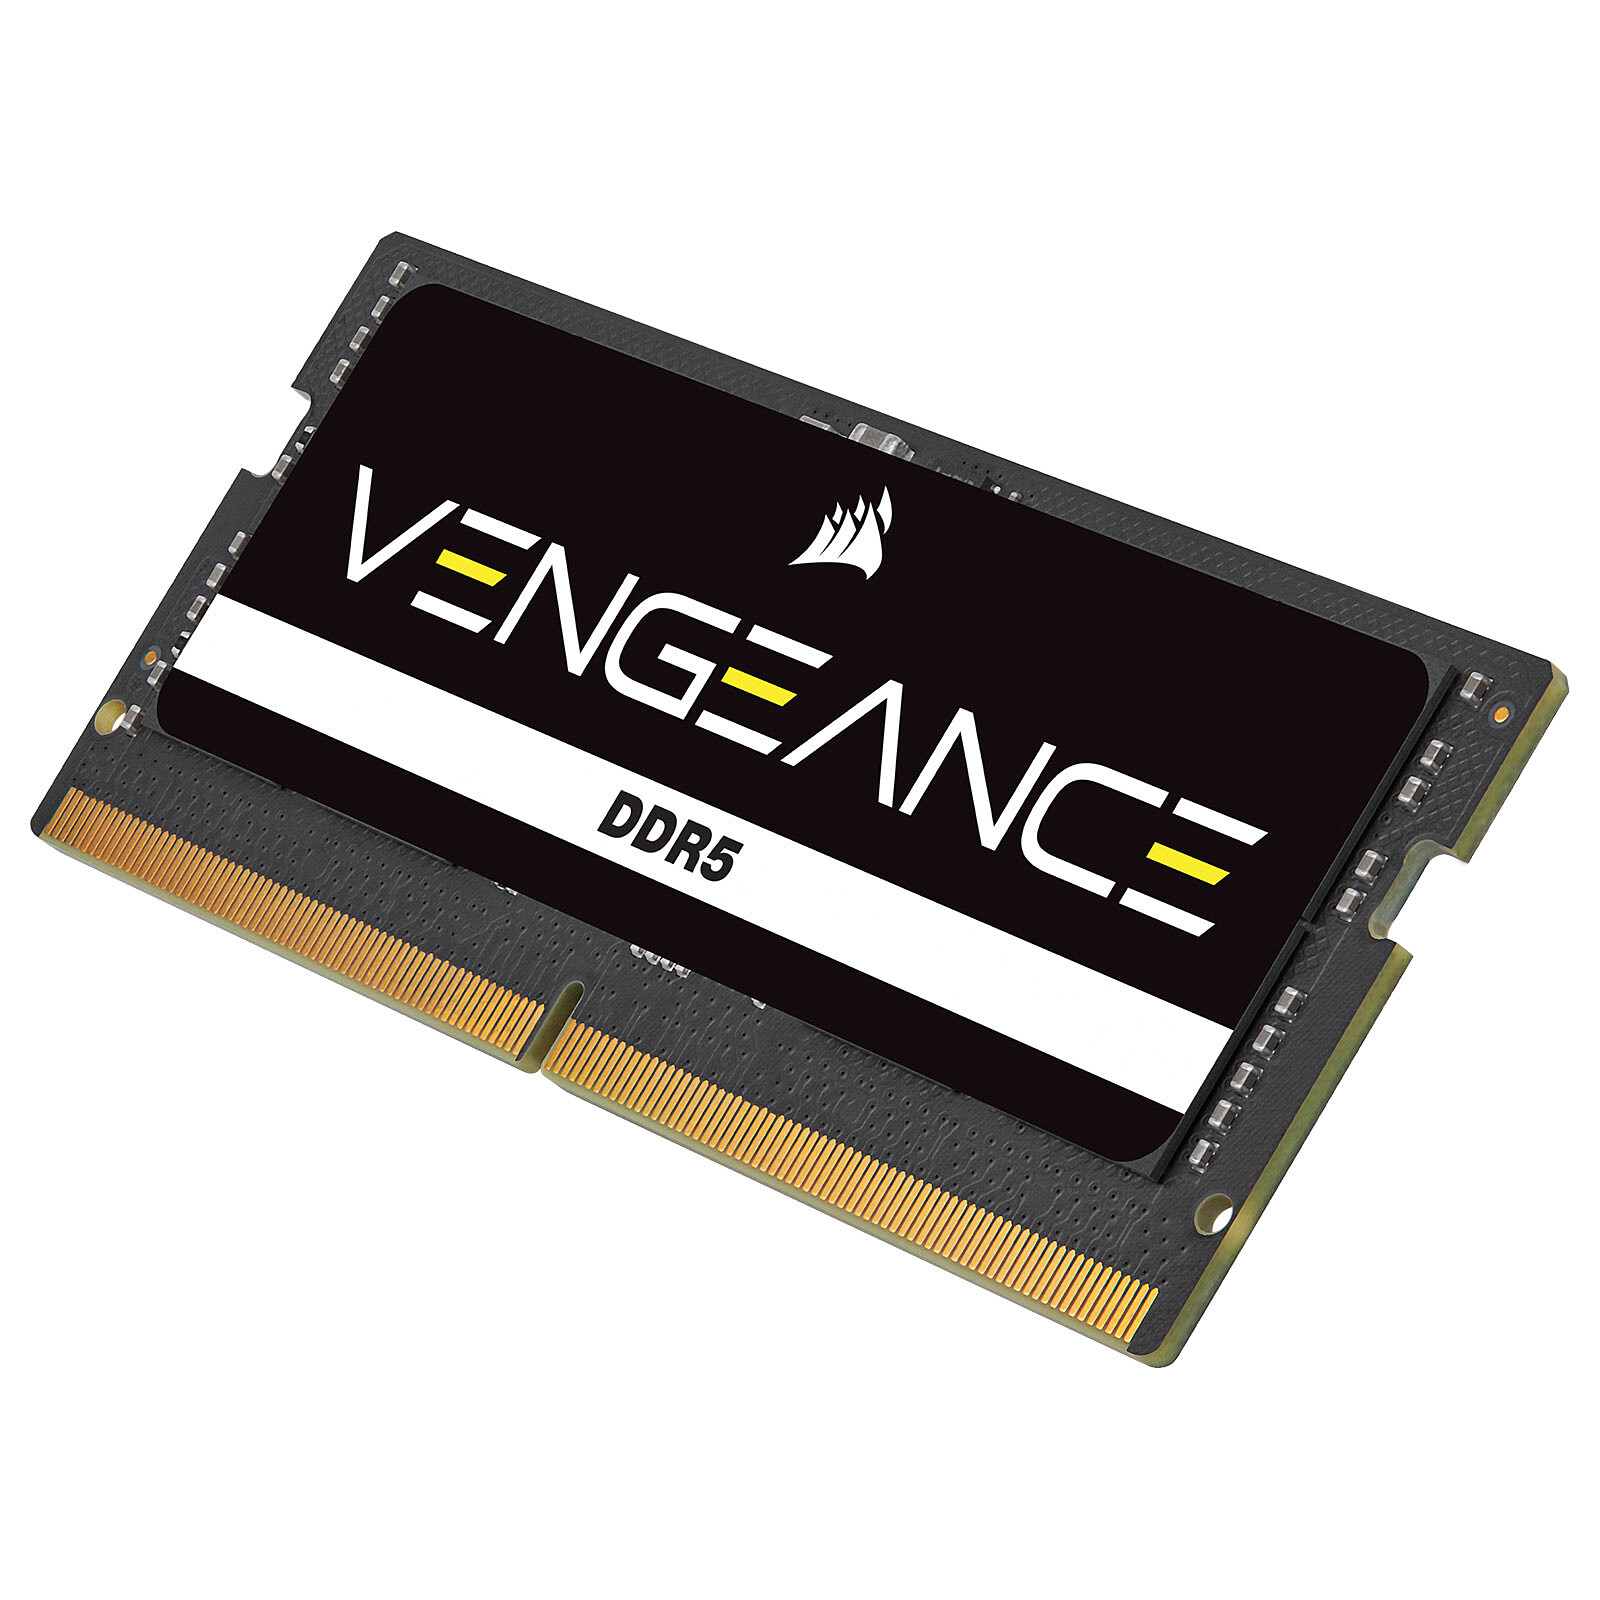 CORSAIR Vengeance DDR5 review: simple but amazing RAM